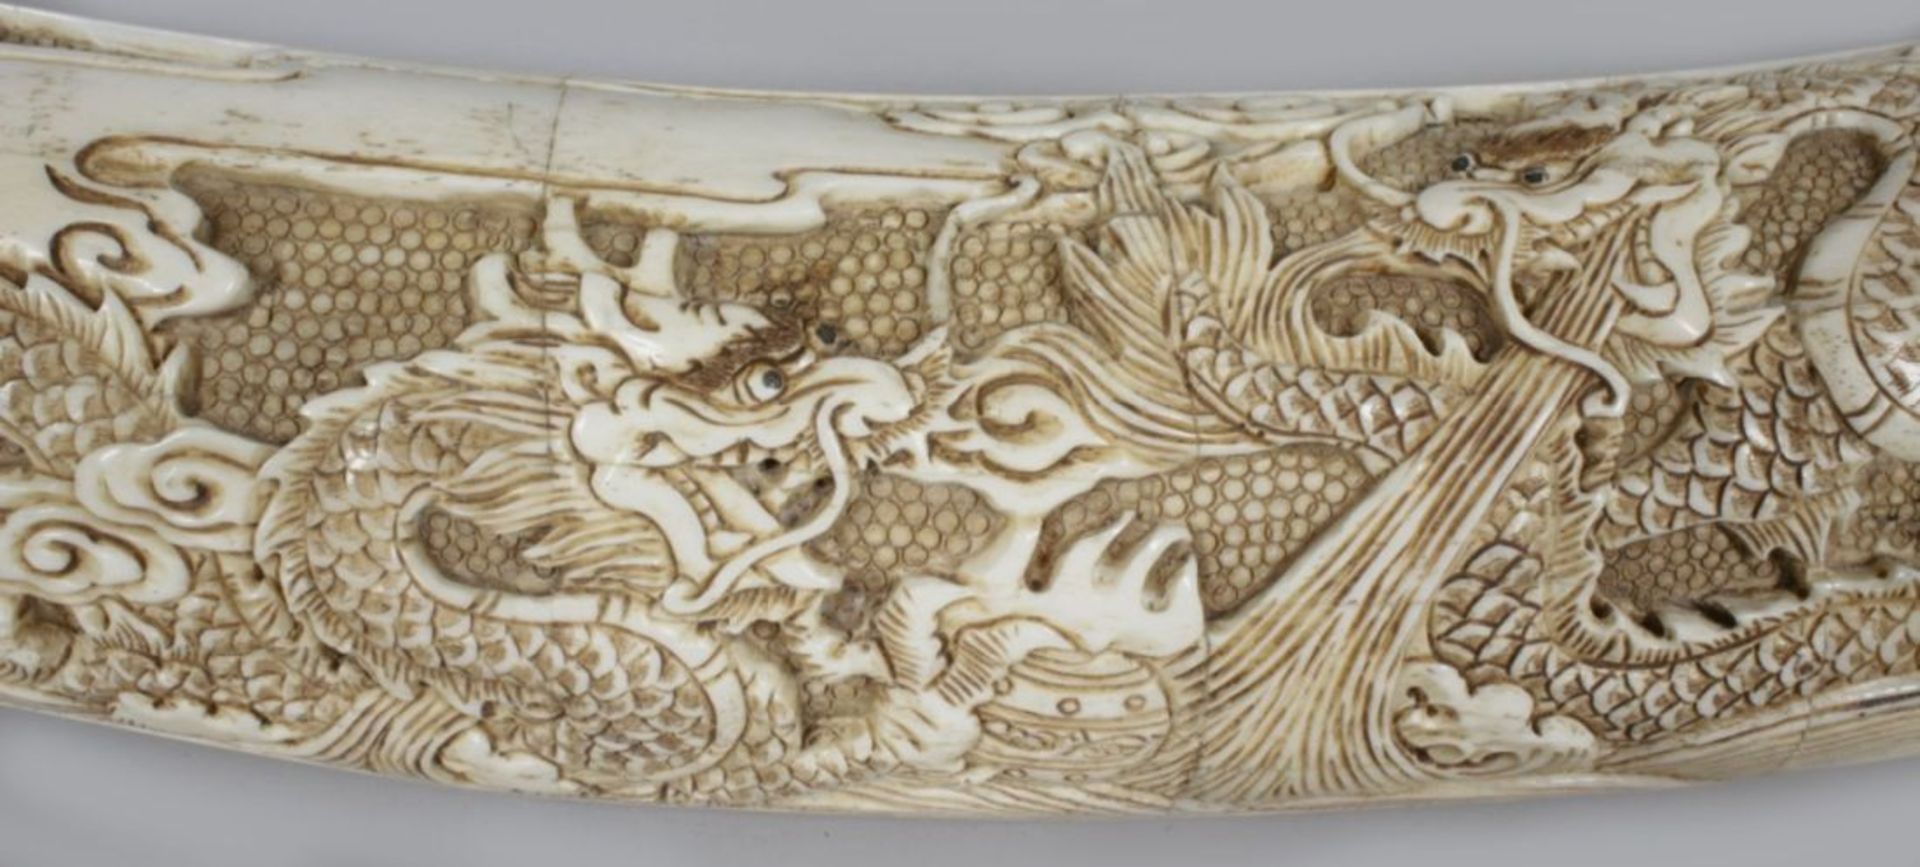 Bein-Schnitzerei, China, 20. Jh., große, gebogte Zahnform, gefertigt aus zusammengesetztenPlatt - Bild 3 aus 4